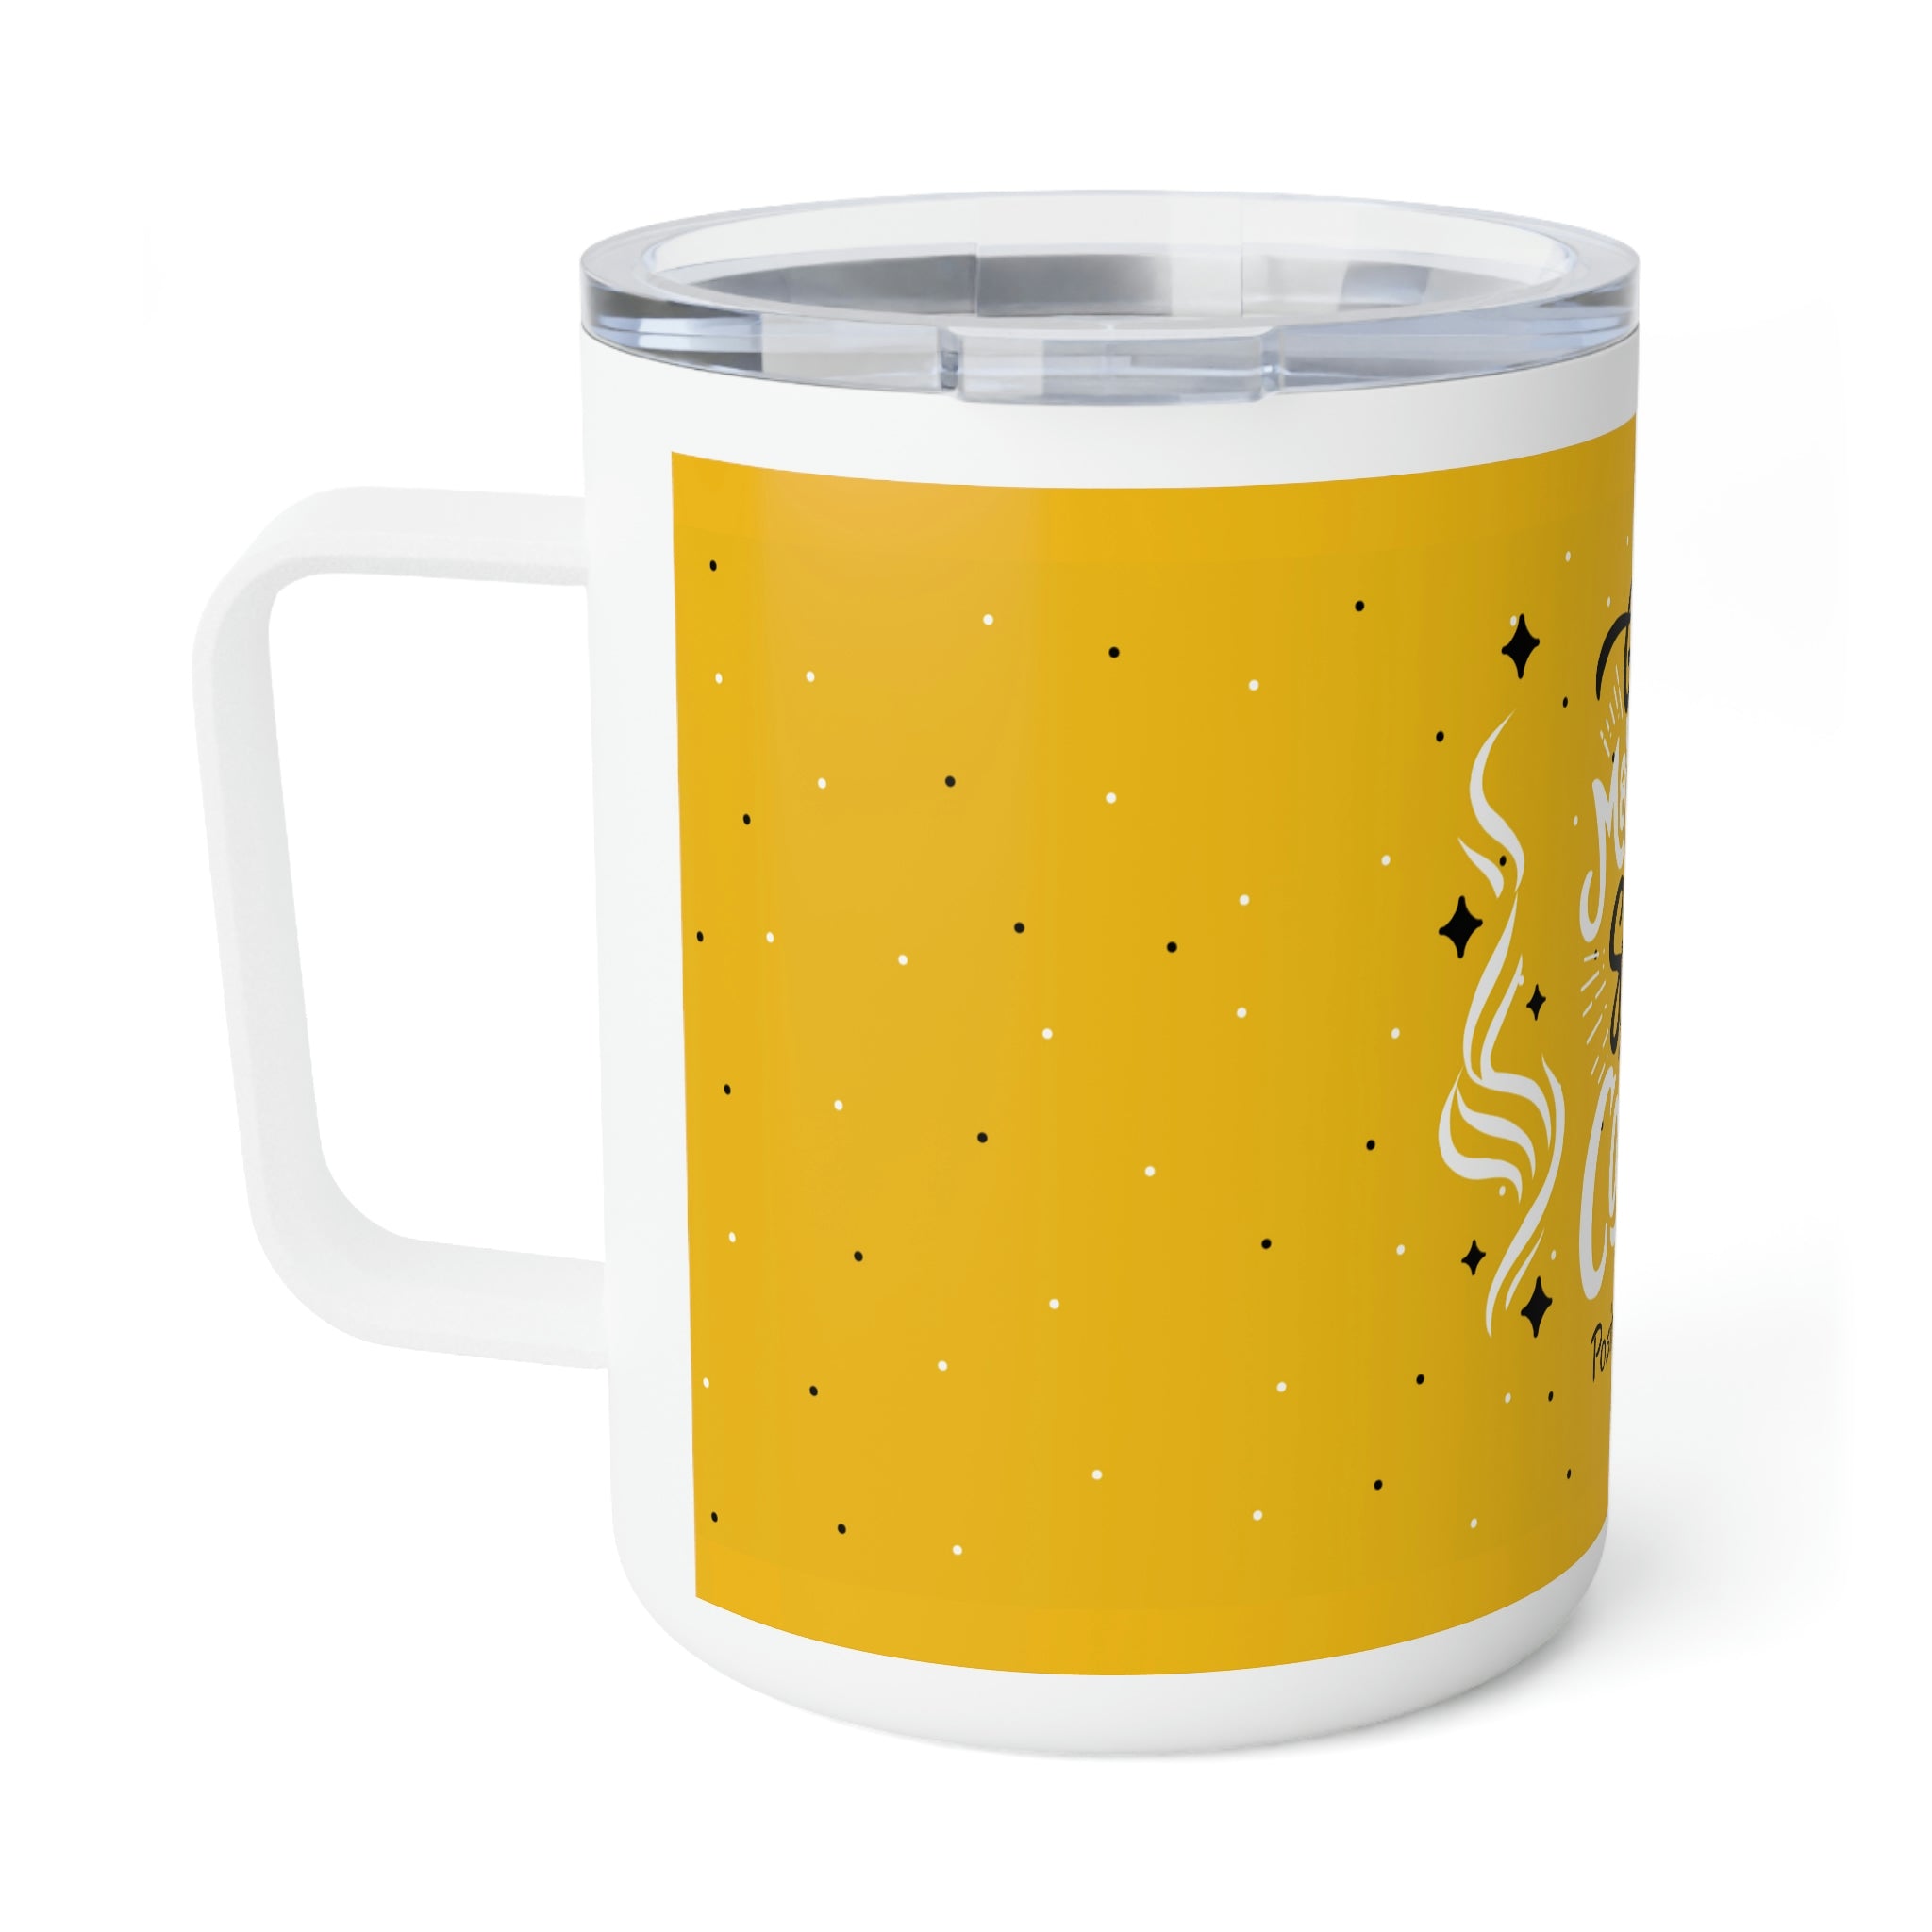 Good Morning Starts with Coffee Mug, 10oz